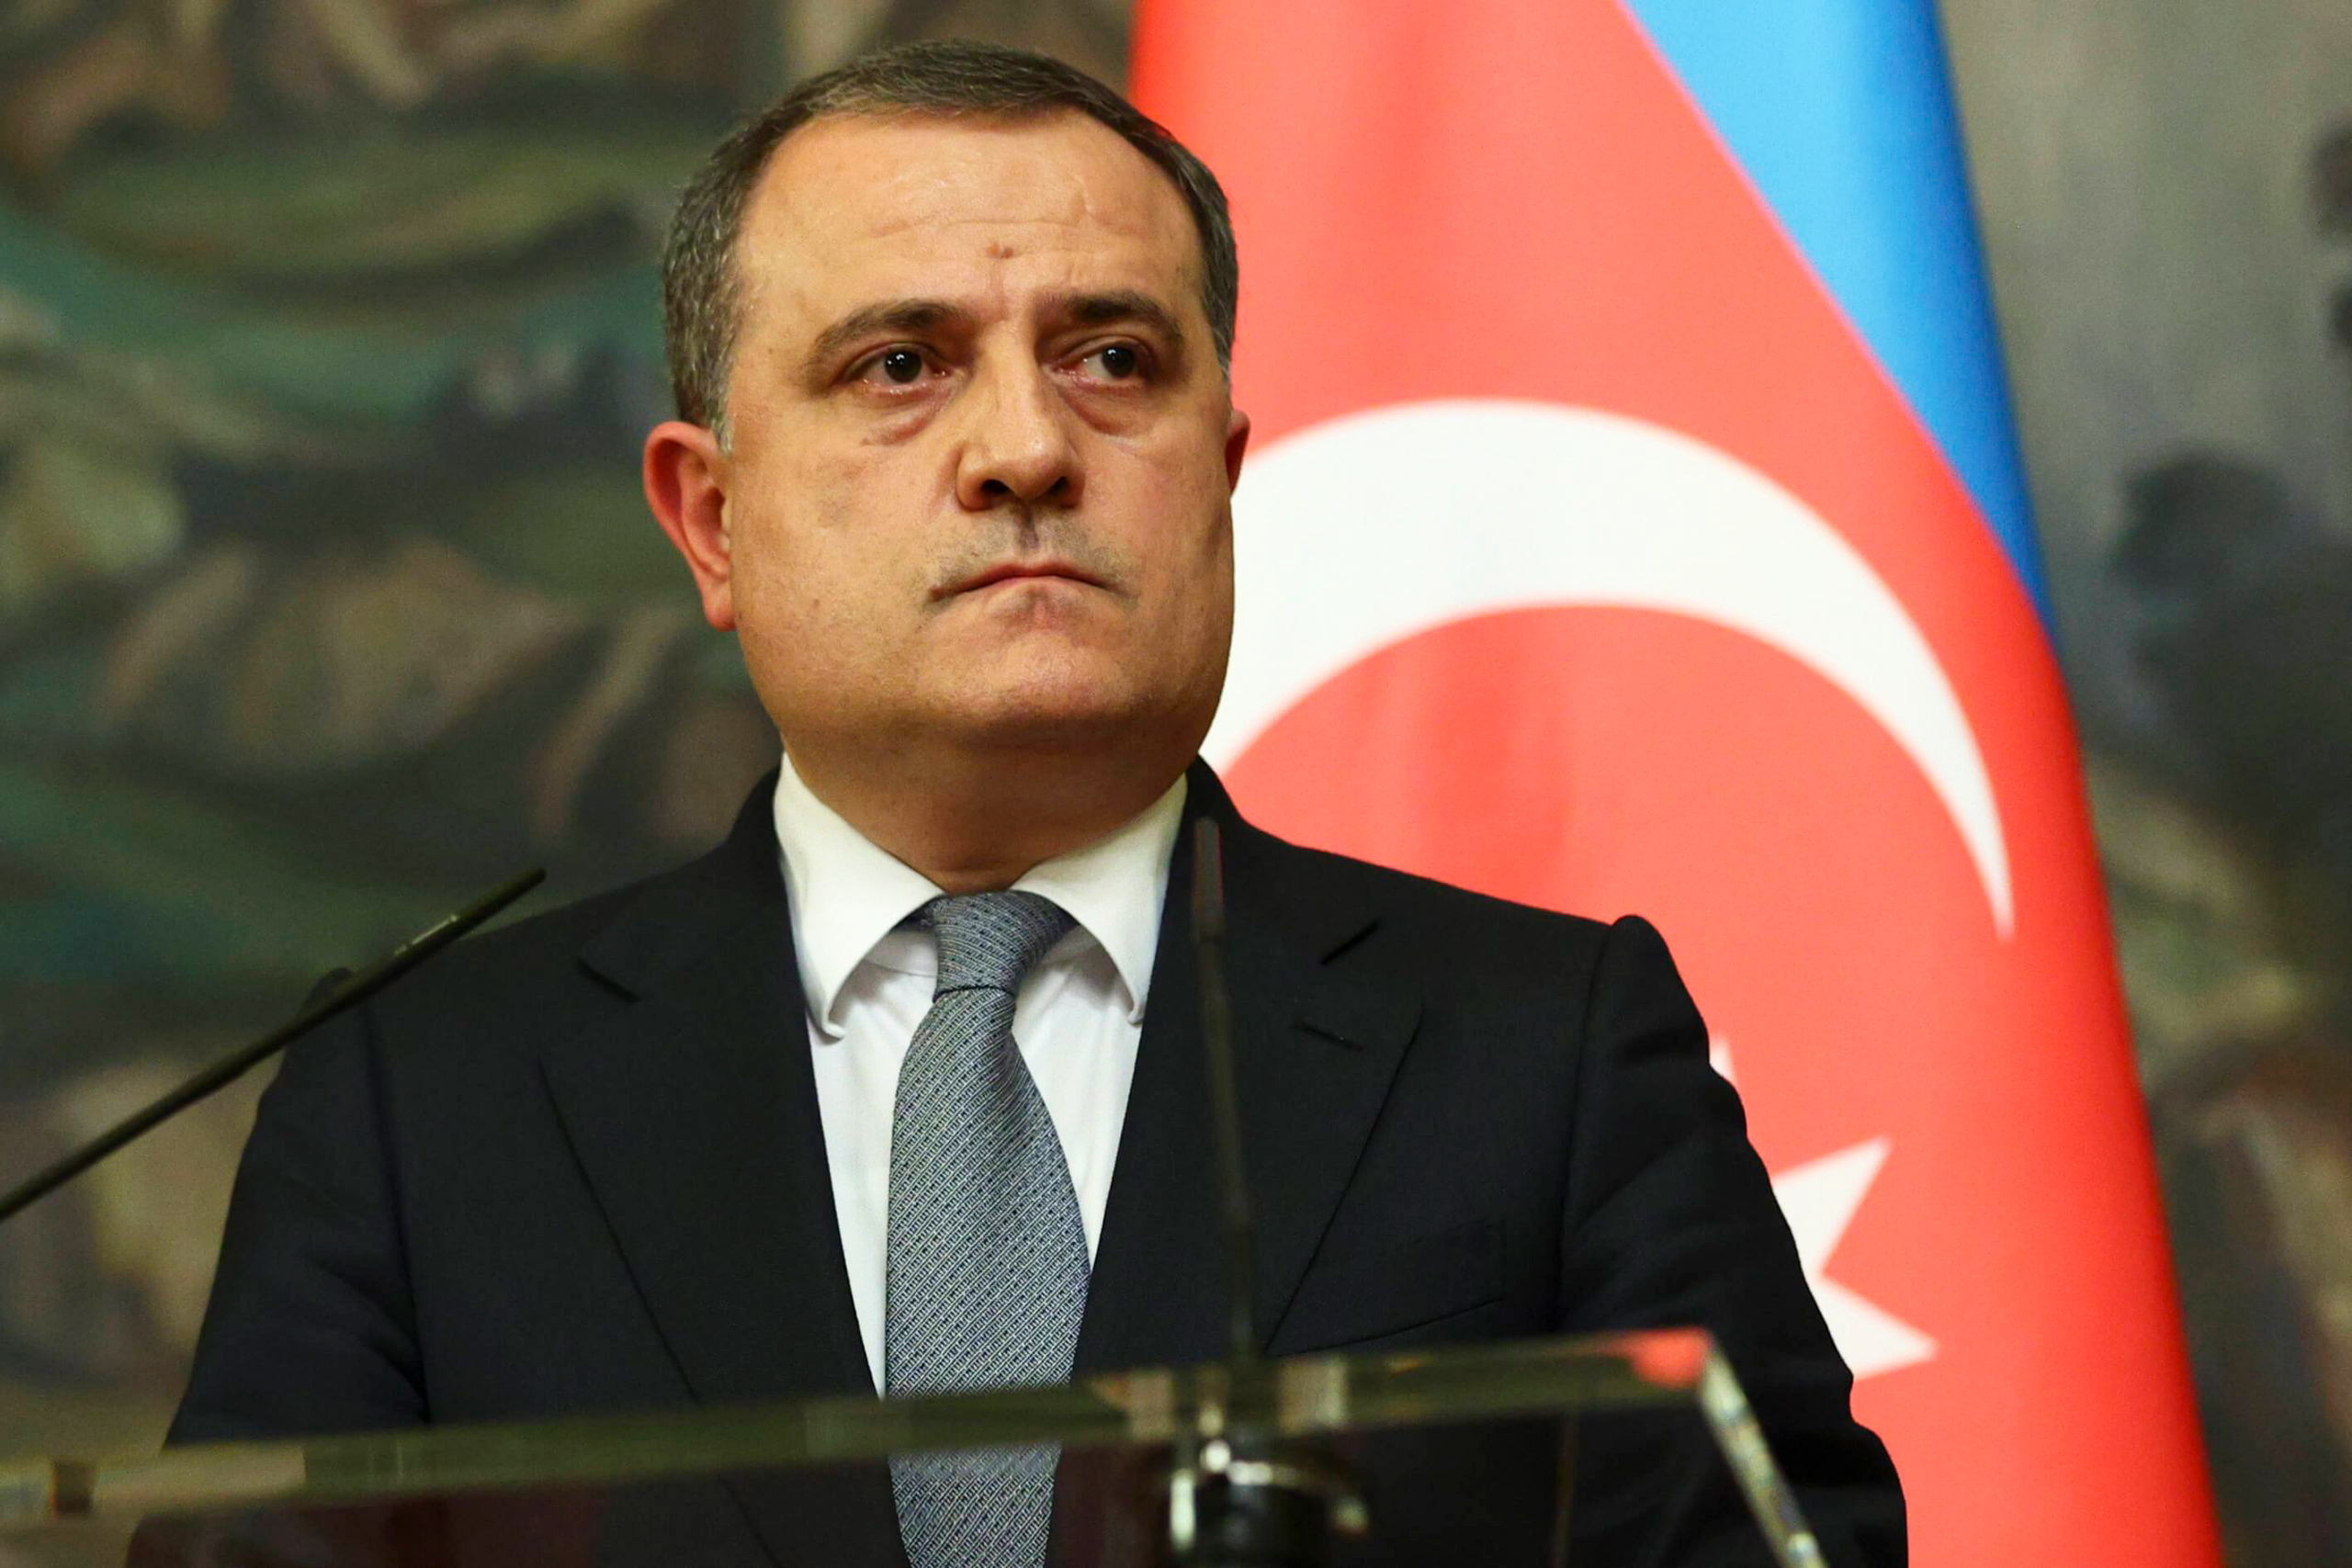 Джейхун Байрамов: Карабахский конфликт завершен, надо смотреть в будущее